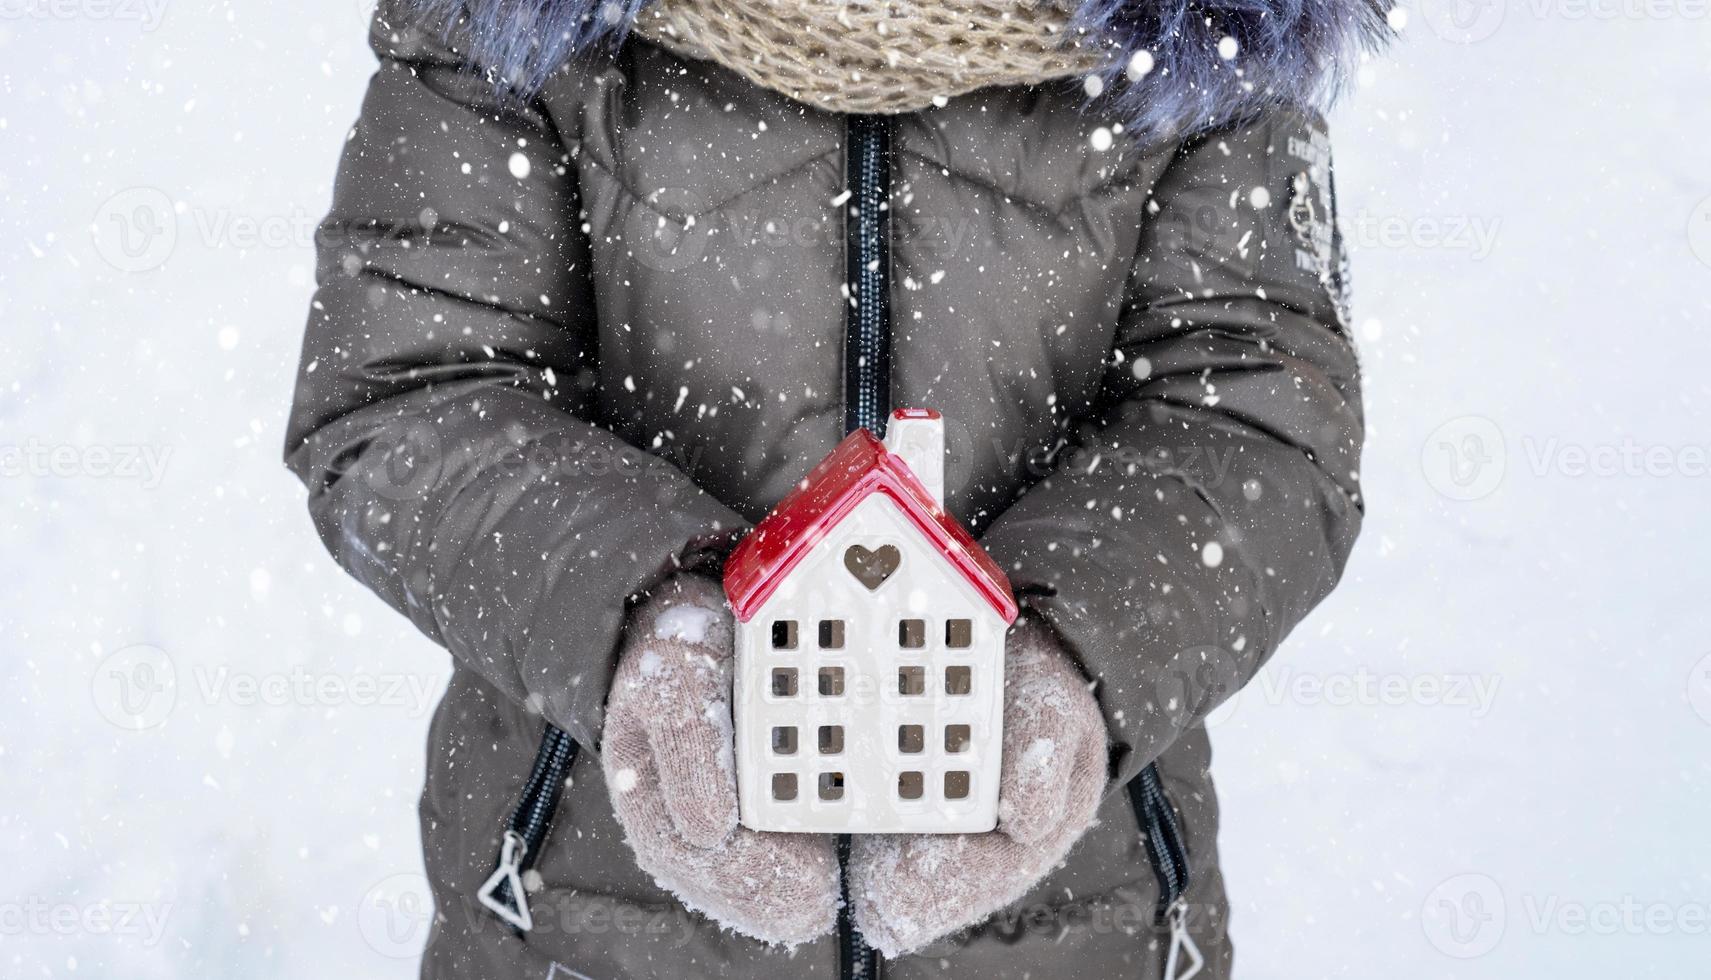 hus, miniatyr- stuga i händer av flicka bär vantar och värma kläder utomhus- i snö. familj värden, inköp hus, flytt, inteckning. mysigt Hem, jul, ny år bokning foto